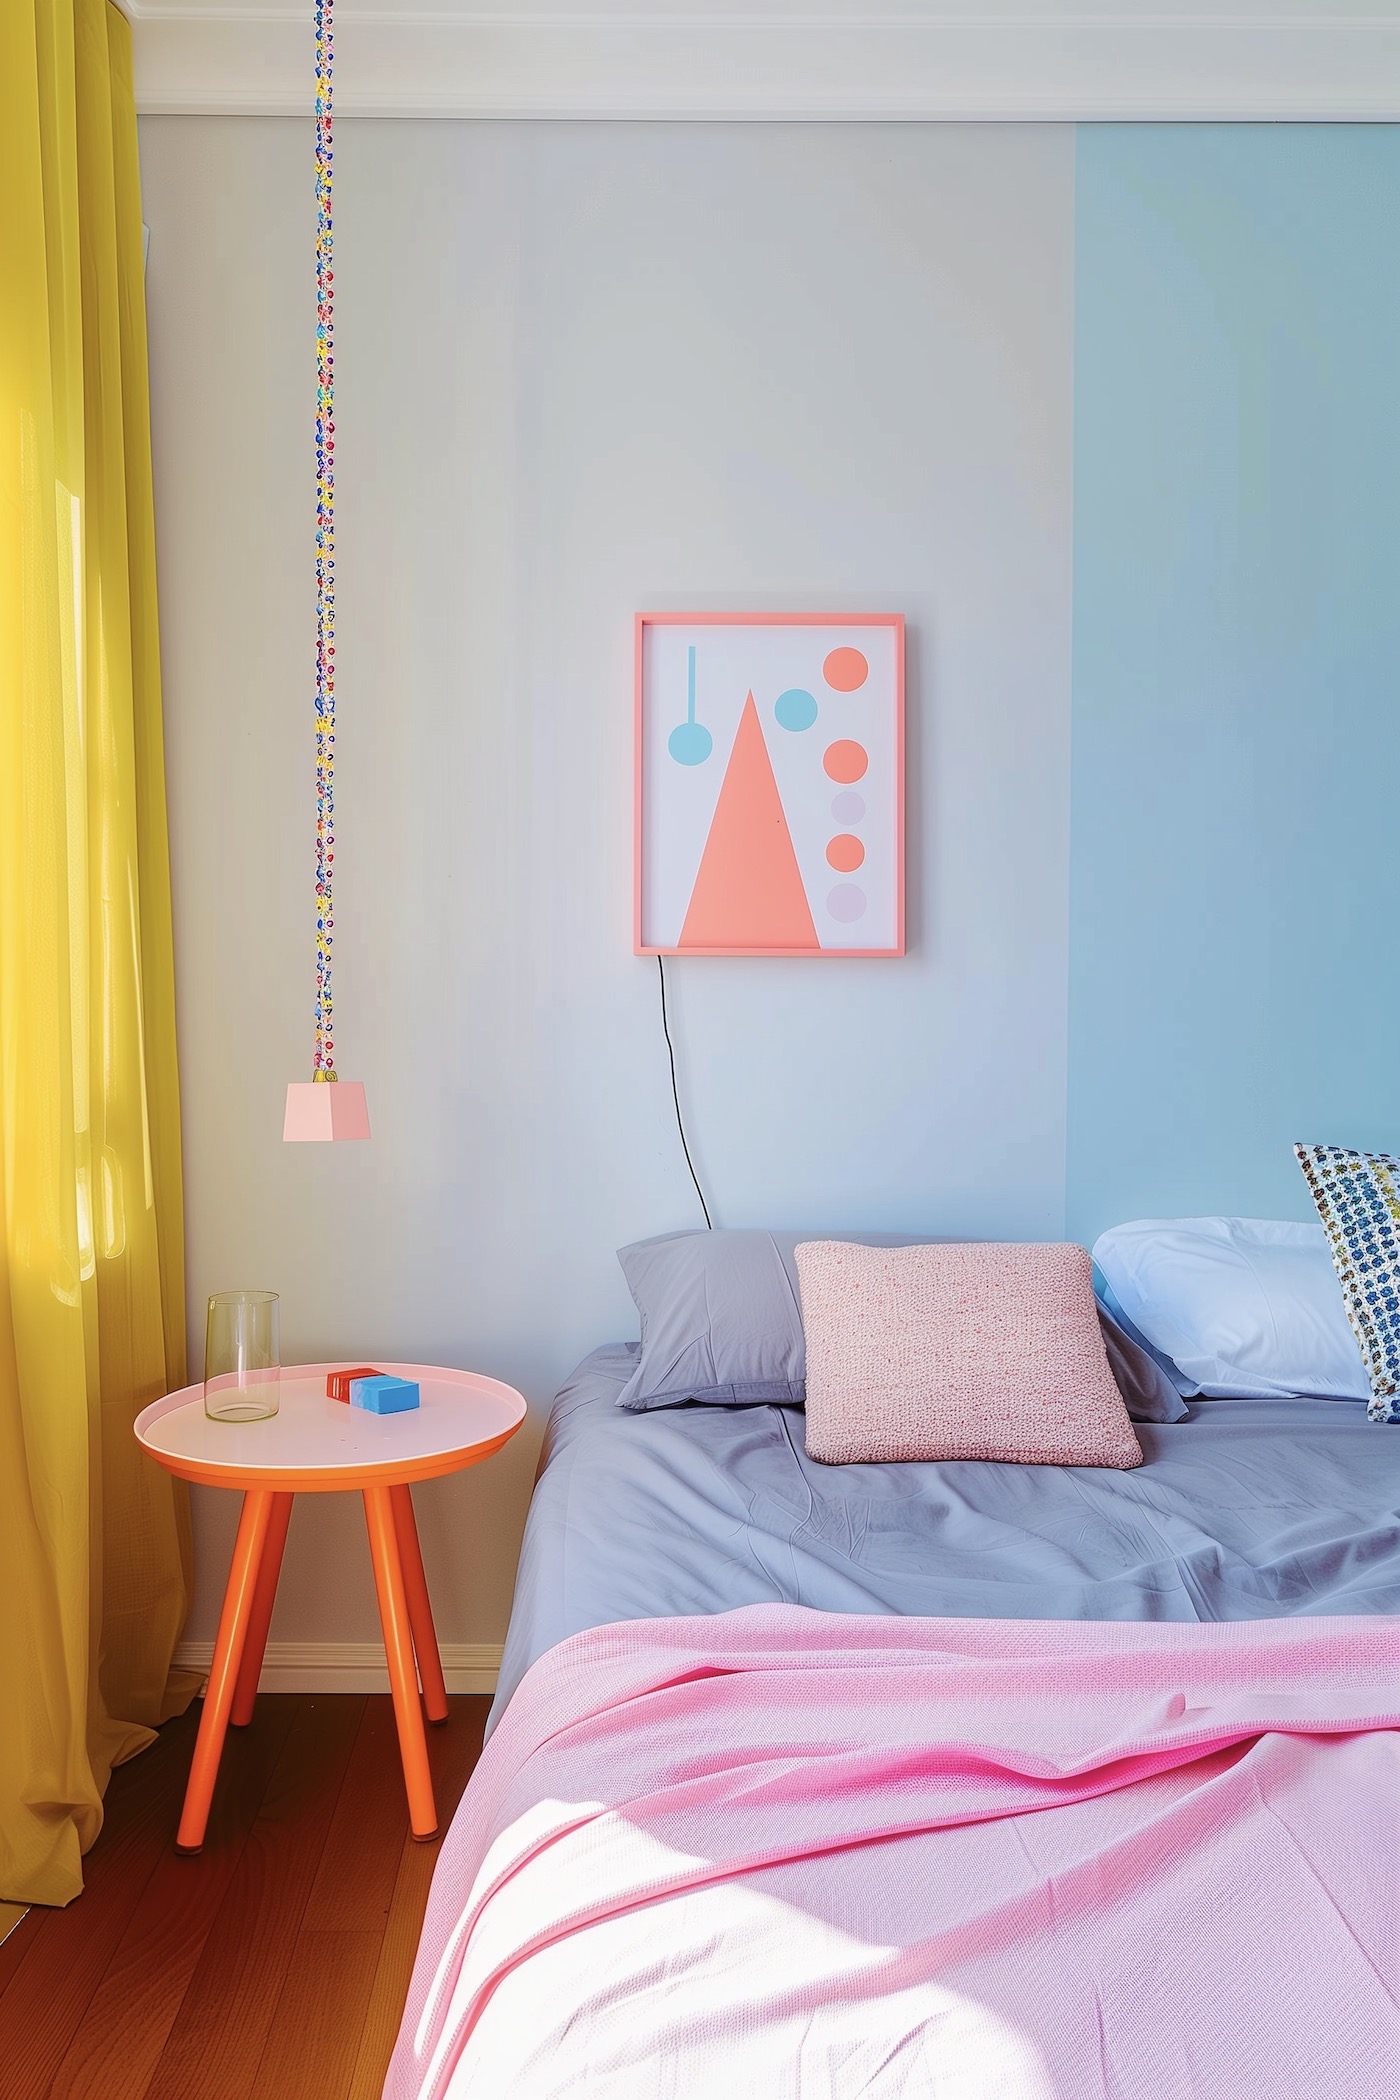 décoration chambre multicolore pastel colorée